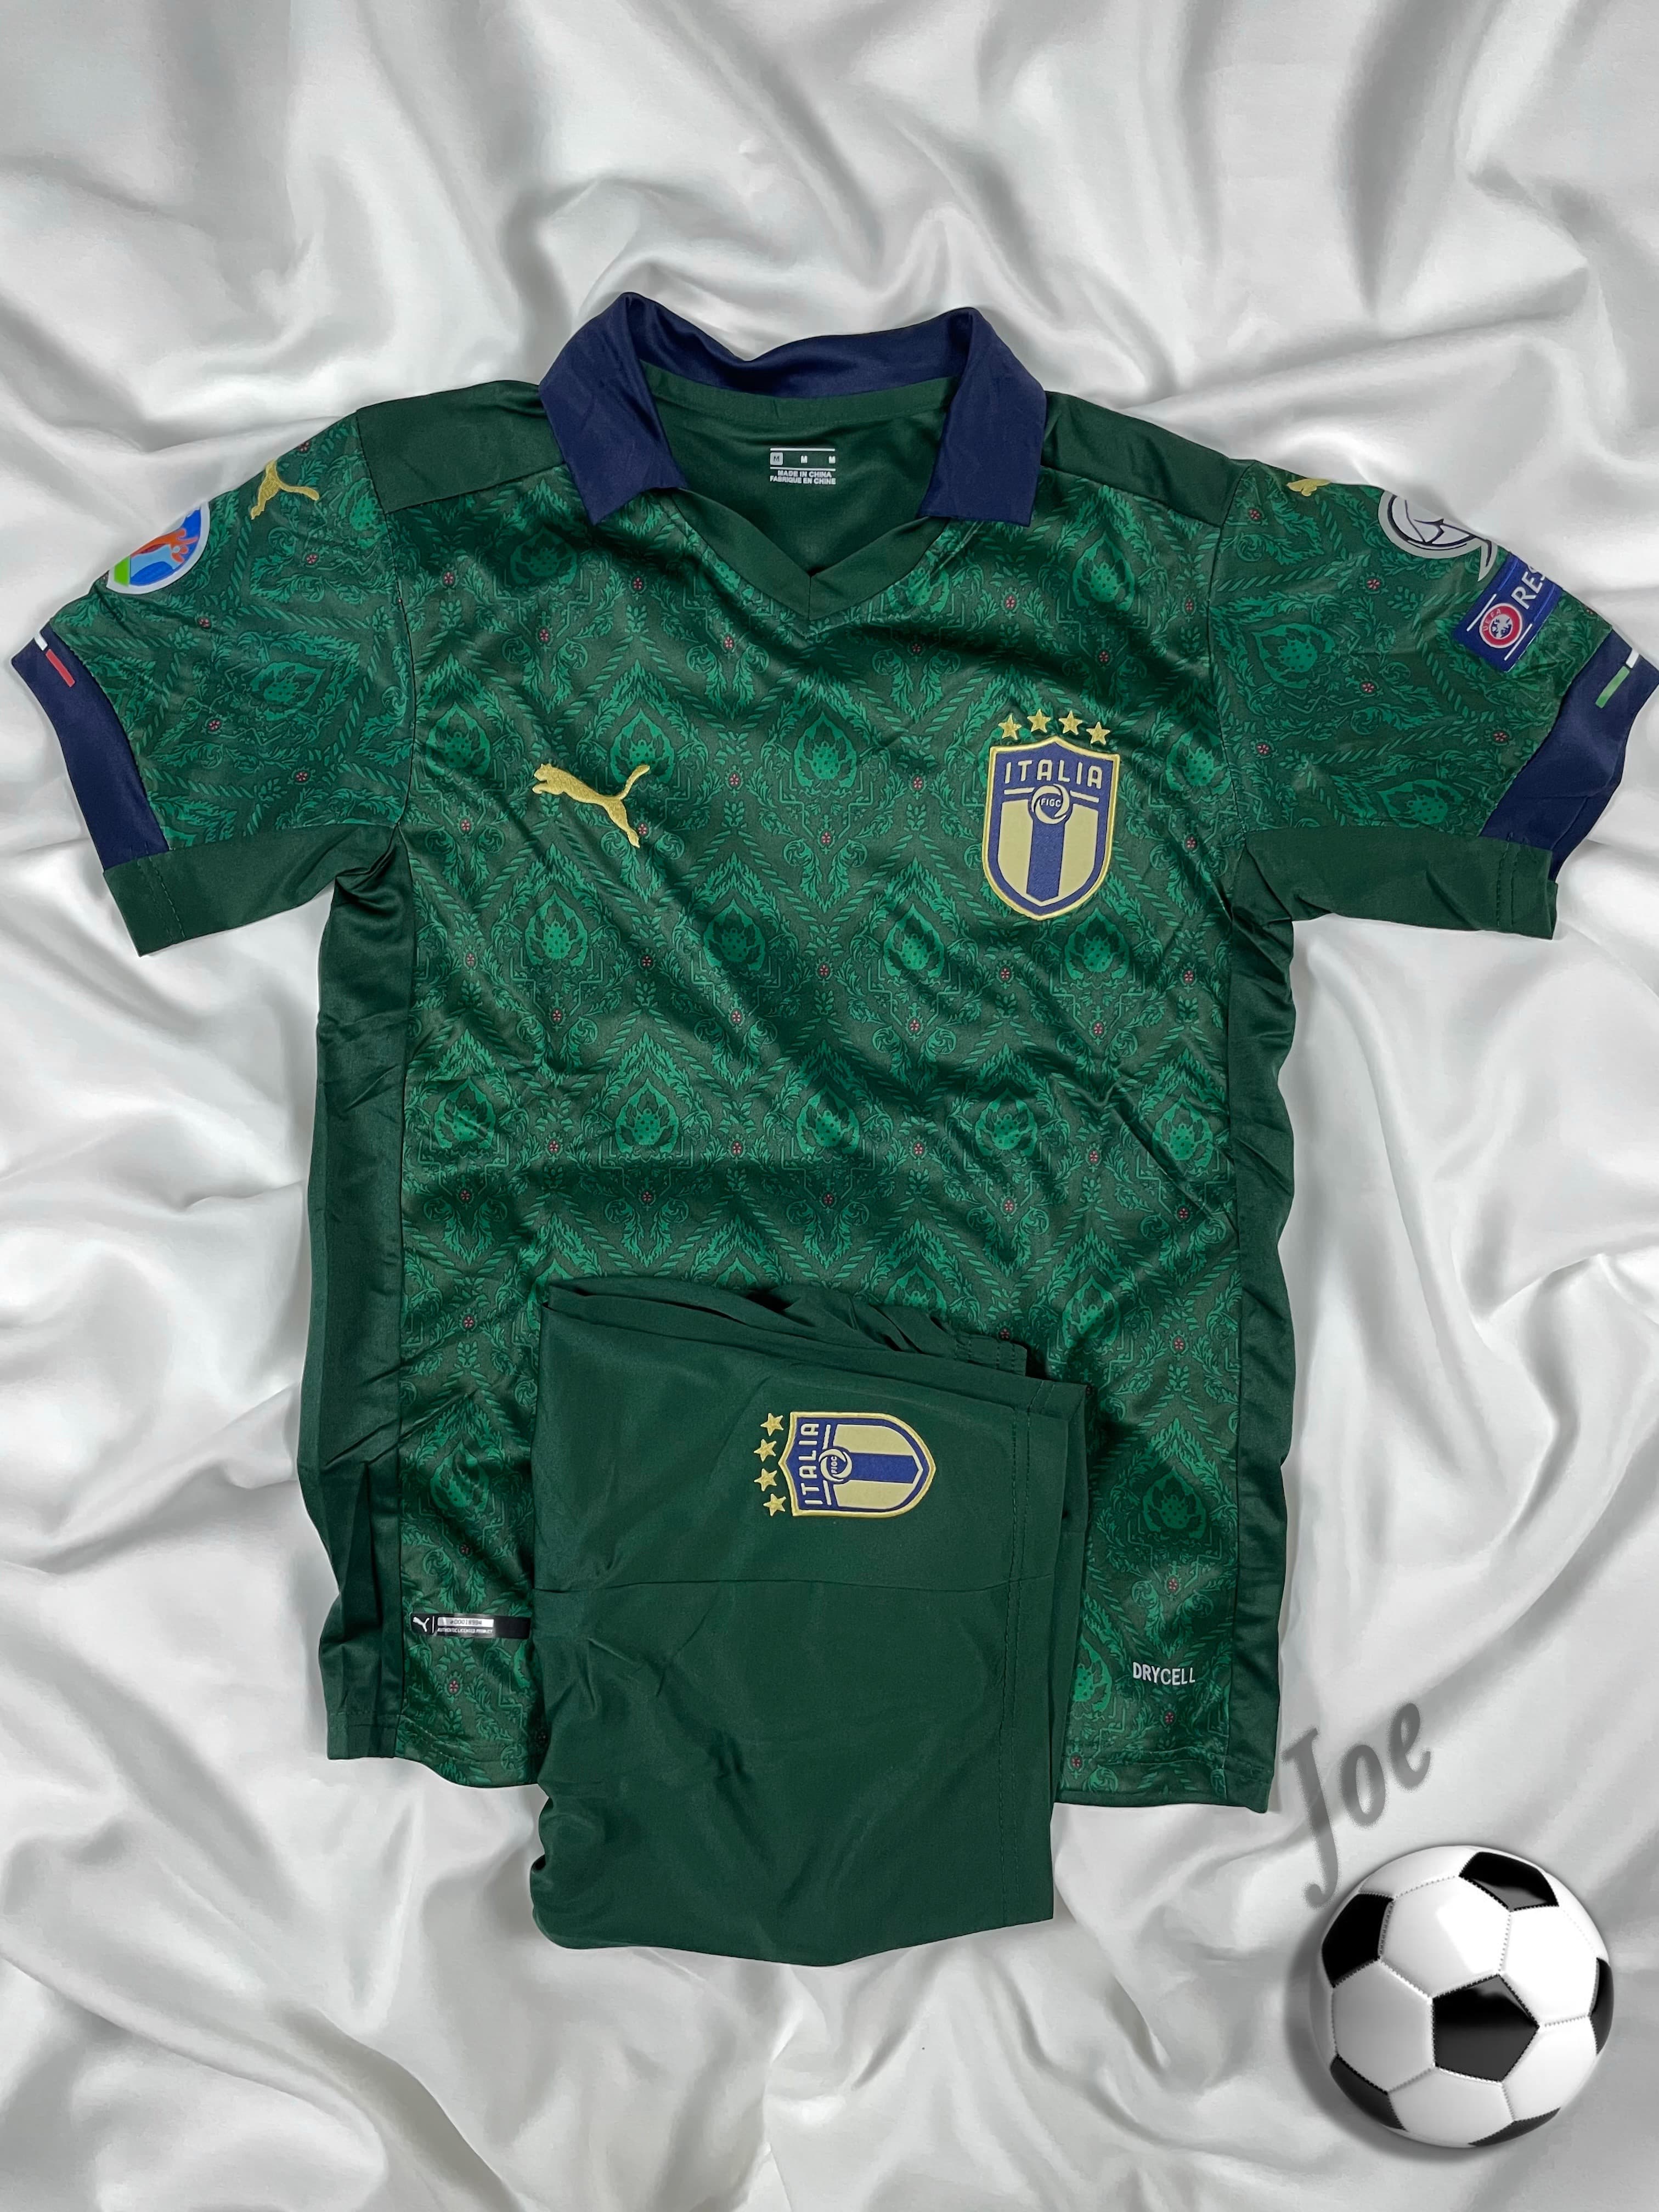 ชุดบอลทีมชาติ Italy (Green) เสื้อบอลและกางเกงบอลผู้ชาย ปี 2020-2021 ใหม่ล่าสุด